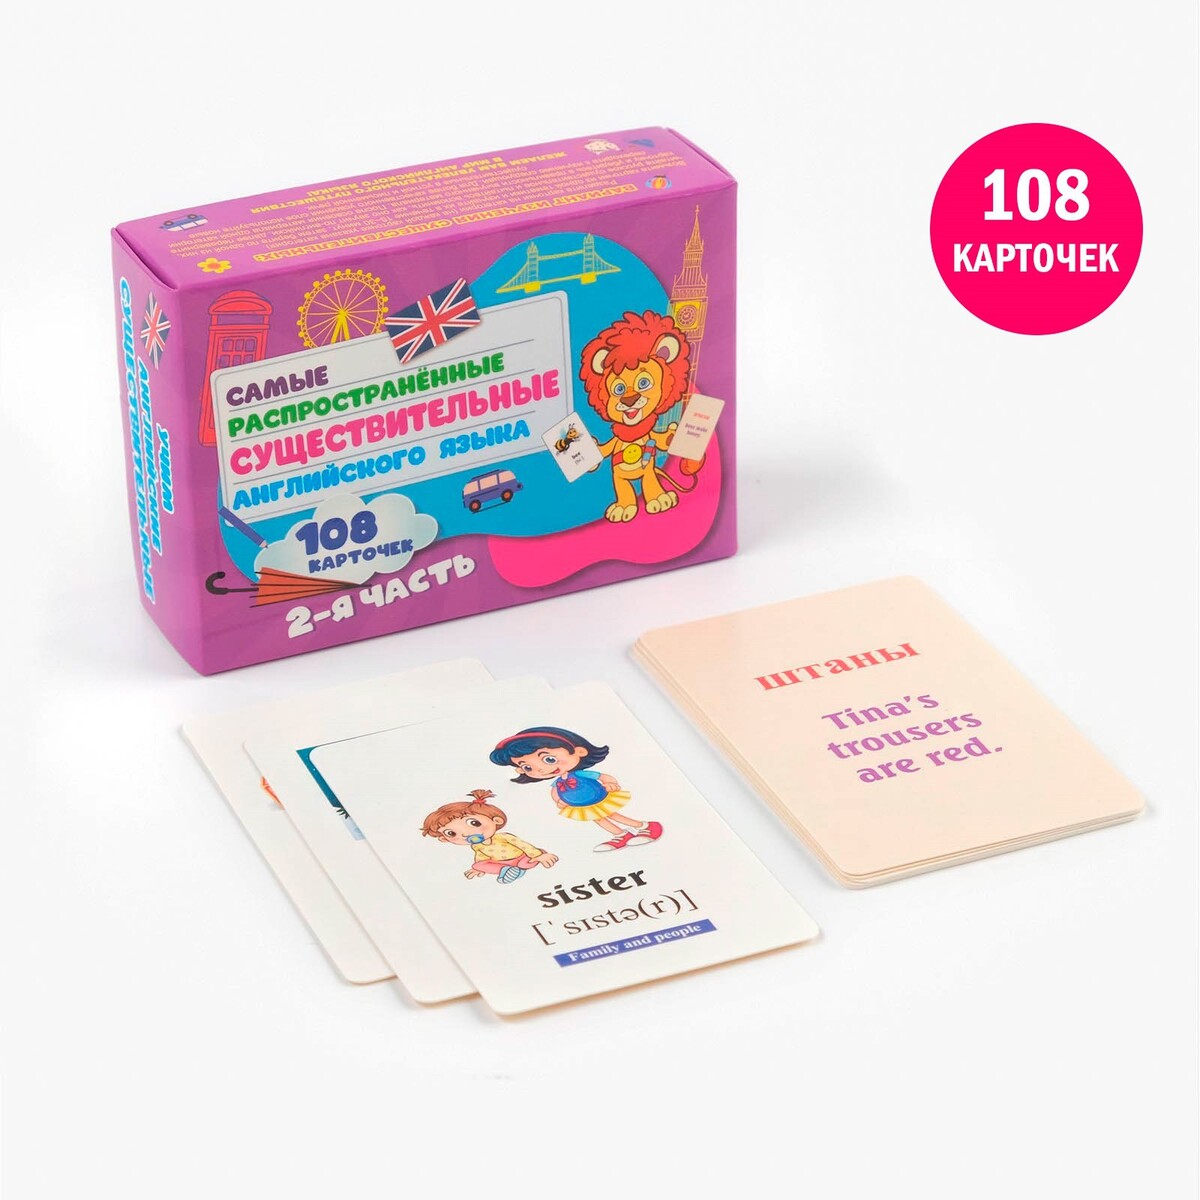 Карточки для изучения английского языка, существительные, часть 2, 108 карточек карточки на кольце для изучения английского языка мамы и детёныши 3